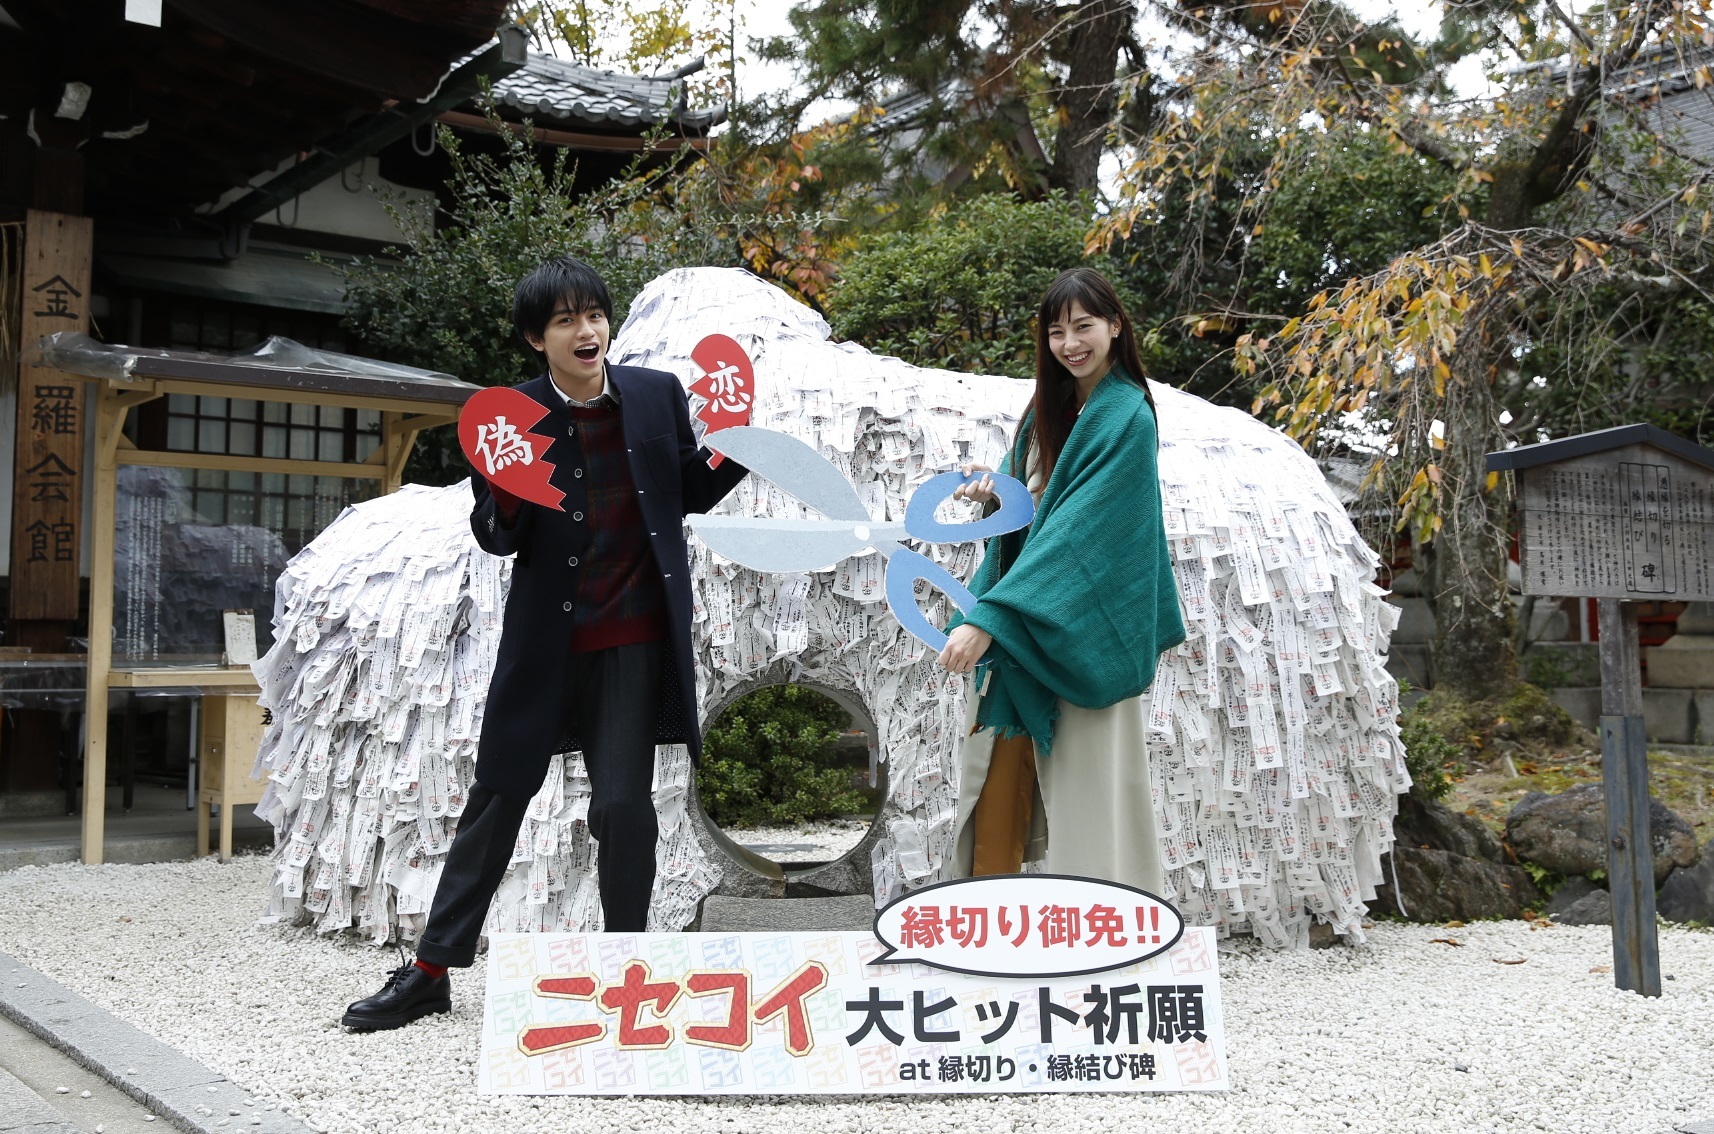 中島健人と中条あやみが映画 ニセコイ で11月22 良い夫婦 日に 縁切り神社 でまさかの縁切り式を開催 Spice エンタメ特化型情報メディア スパイス